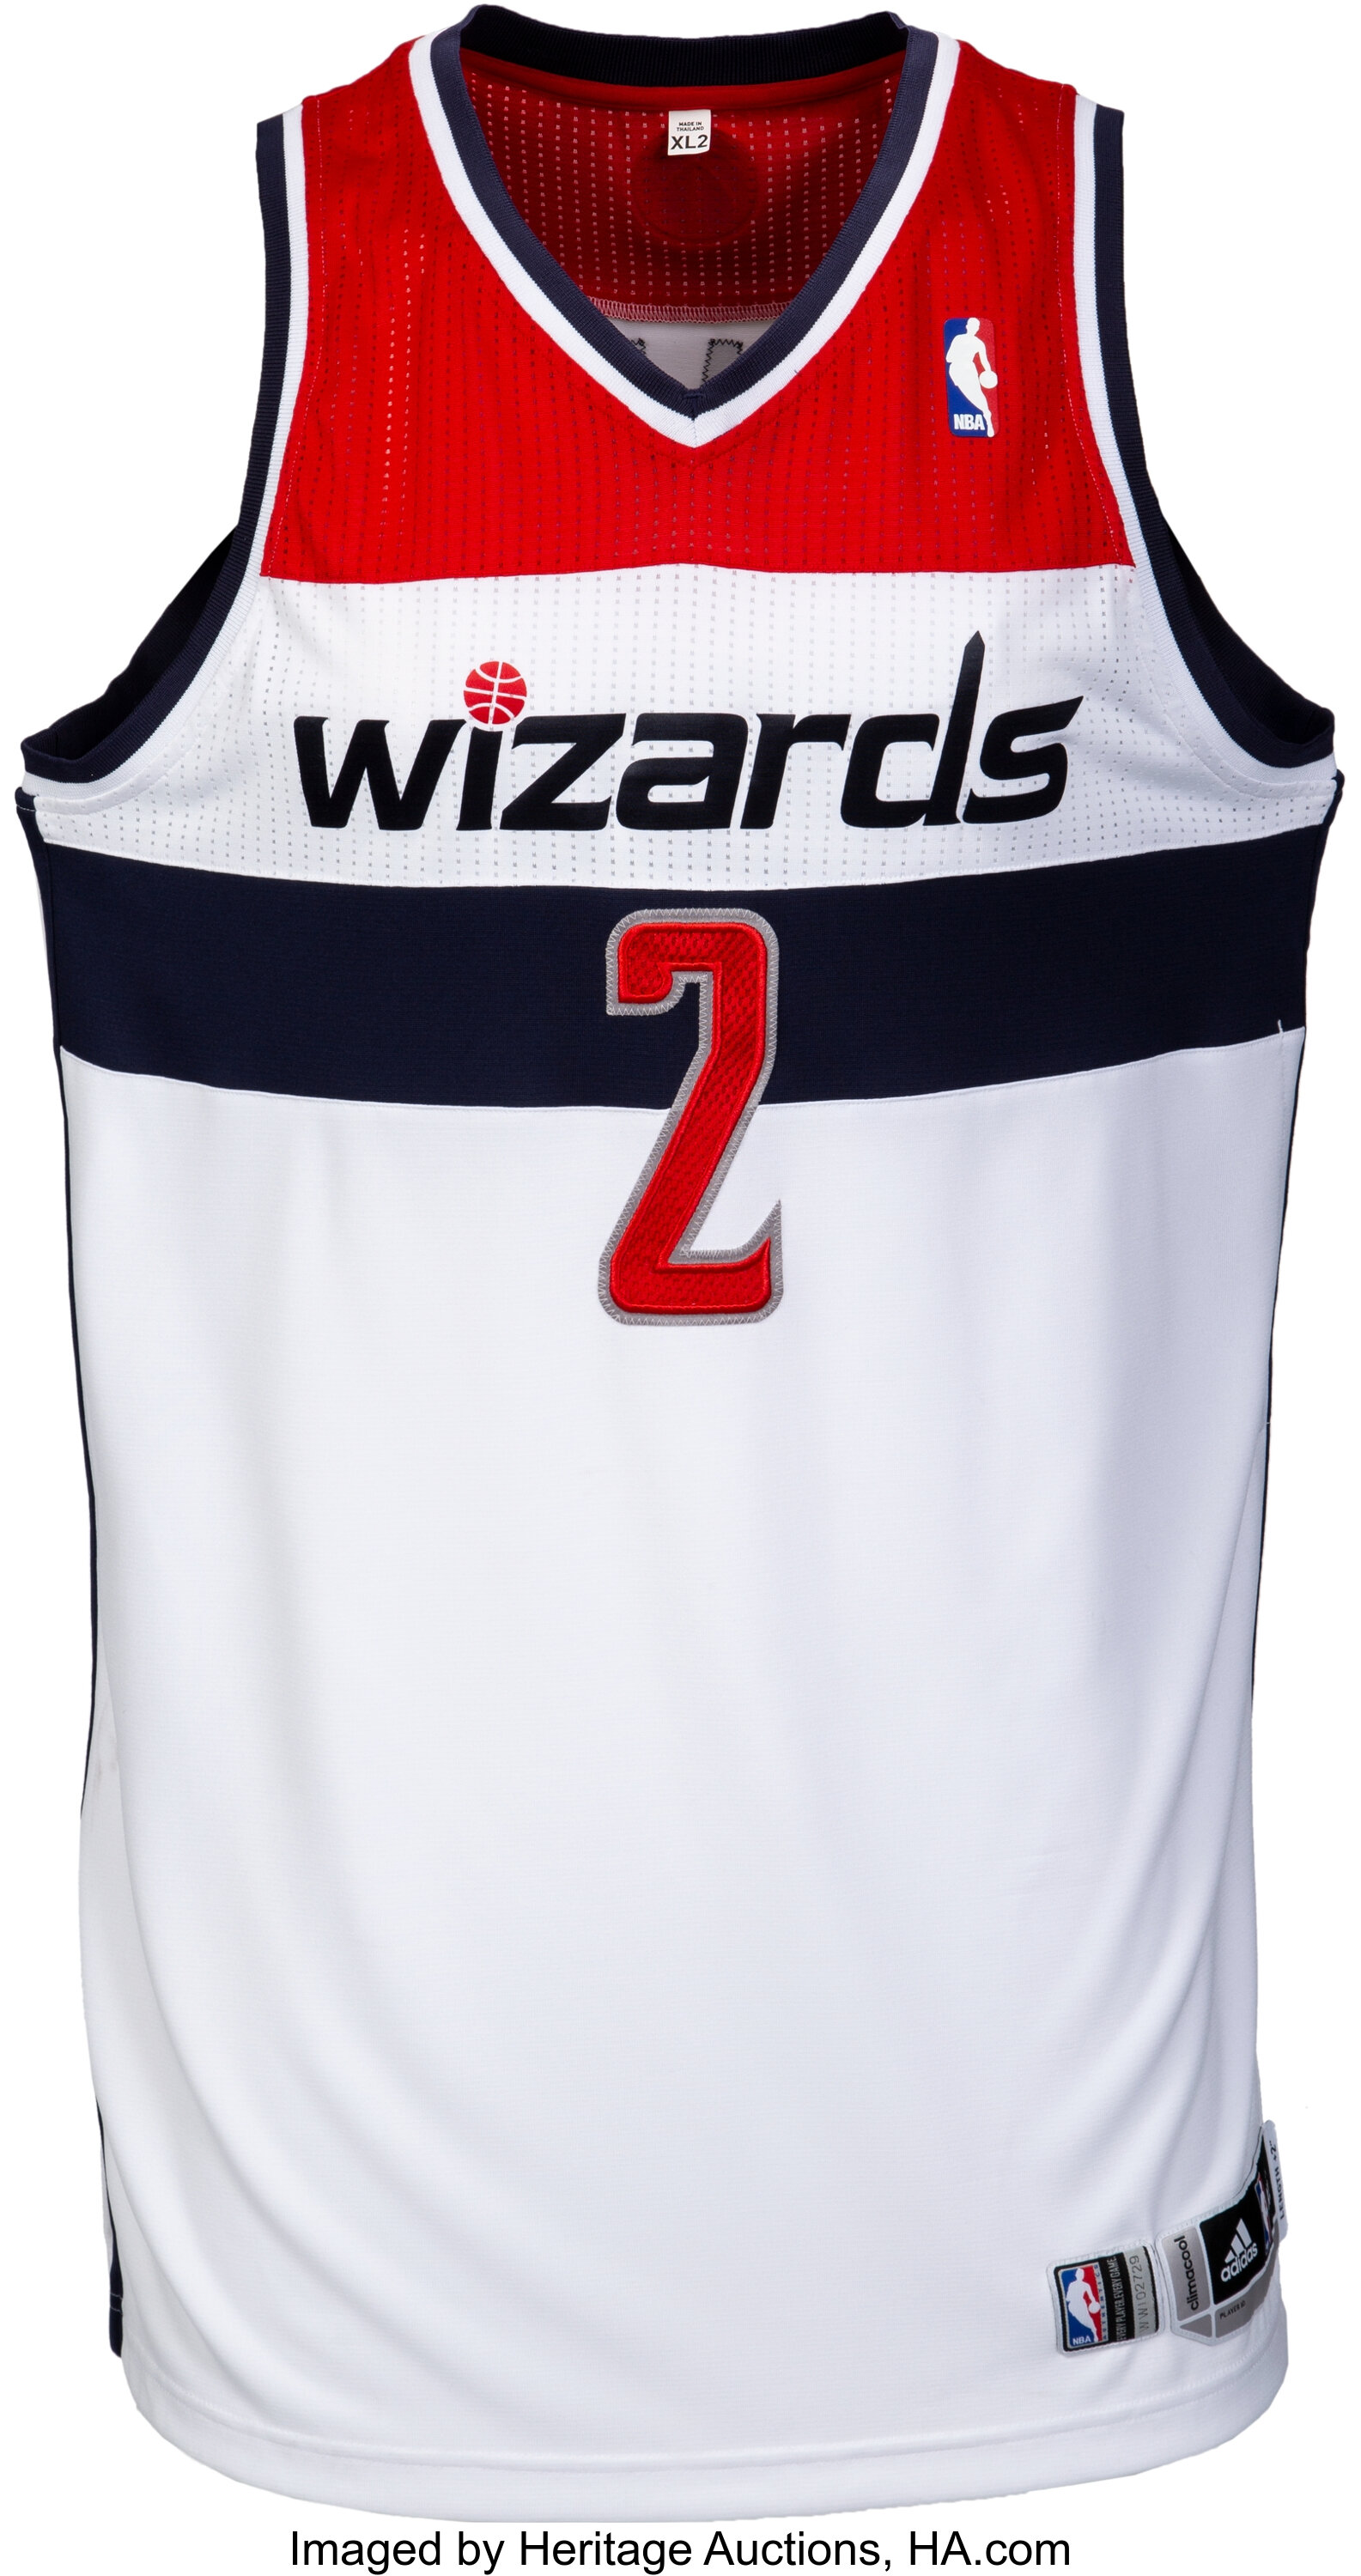 2013-14 John Wall Game Worn Washington Wizards Jersey.